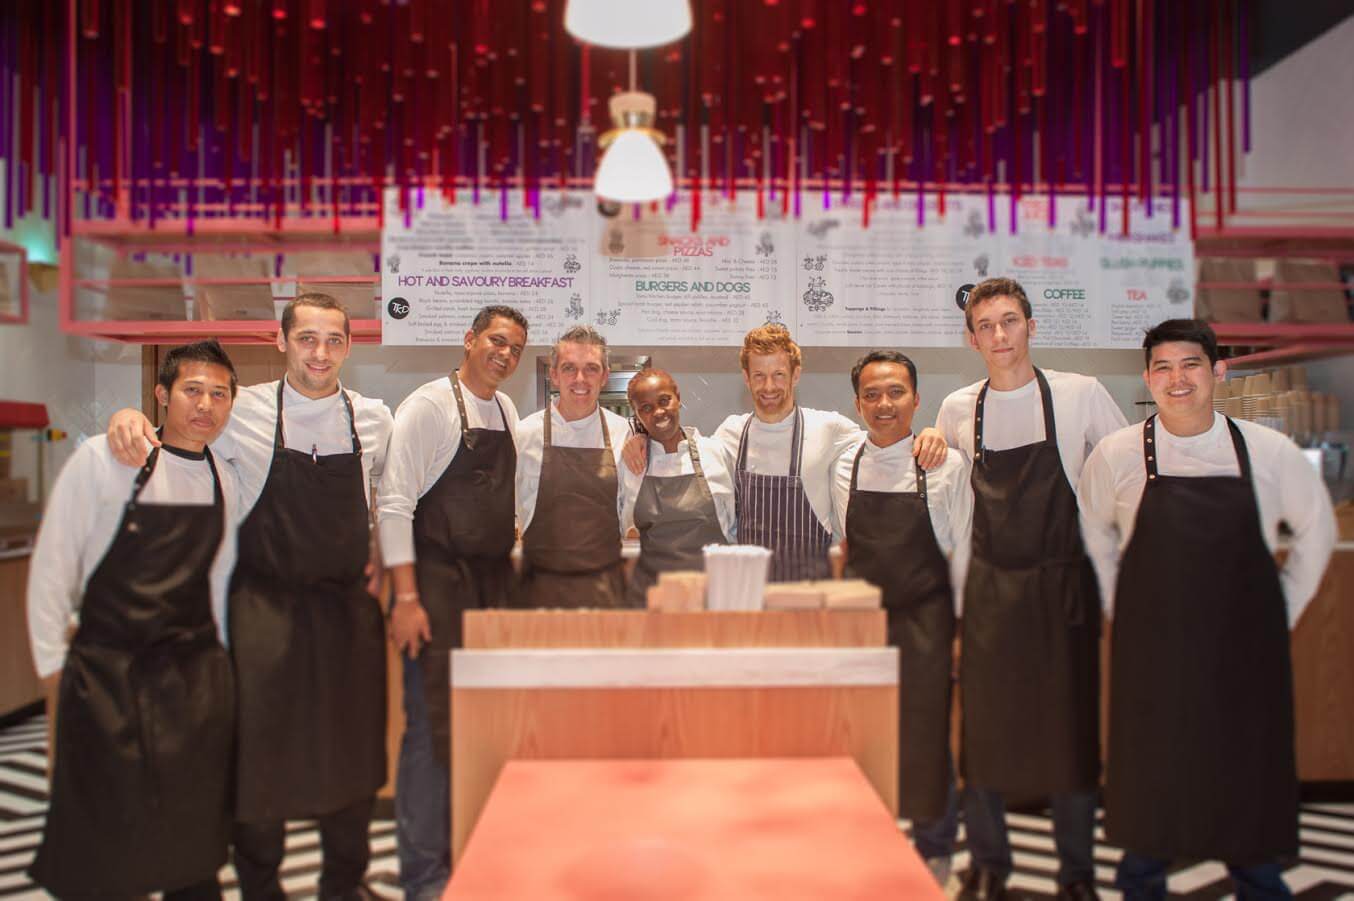 توم آيكنز يفتتح مطعمه الجديد “تومز كيتشن ديلي” في دبي